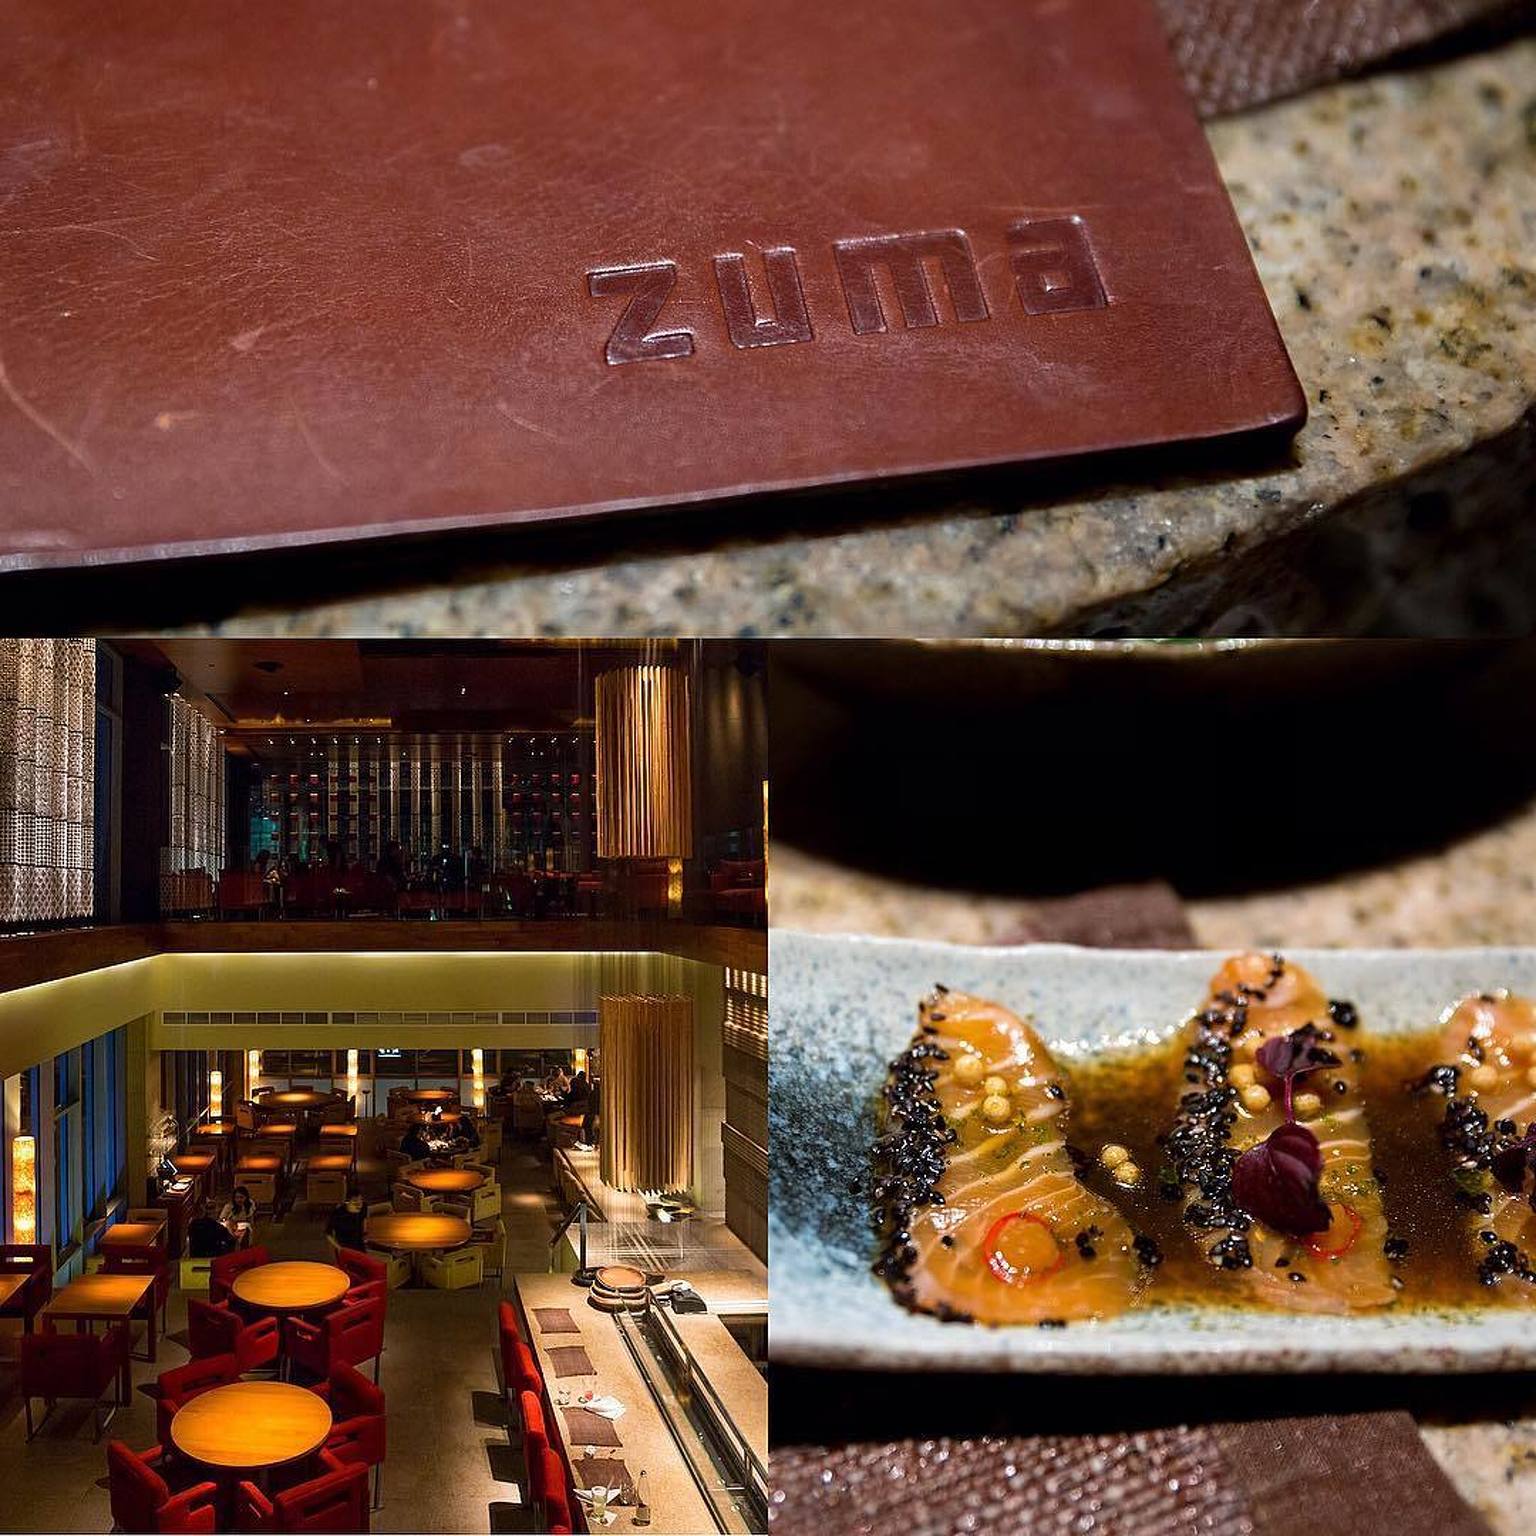 Food Review: Zuma Dubai plates up quality fare - News